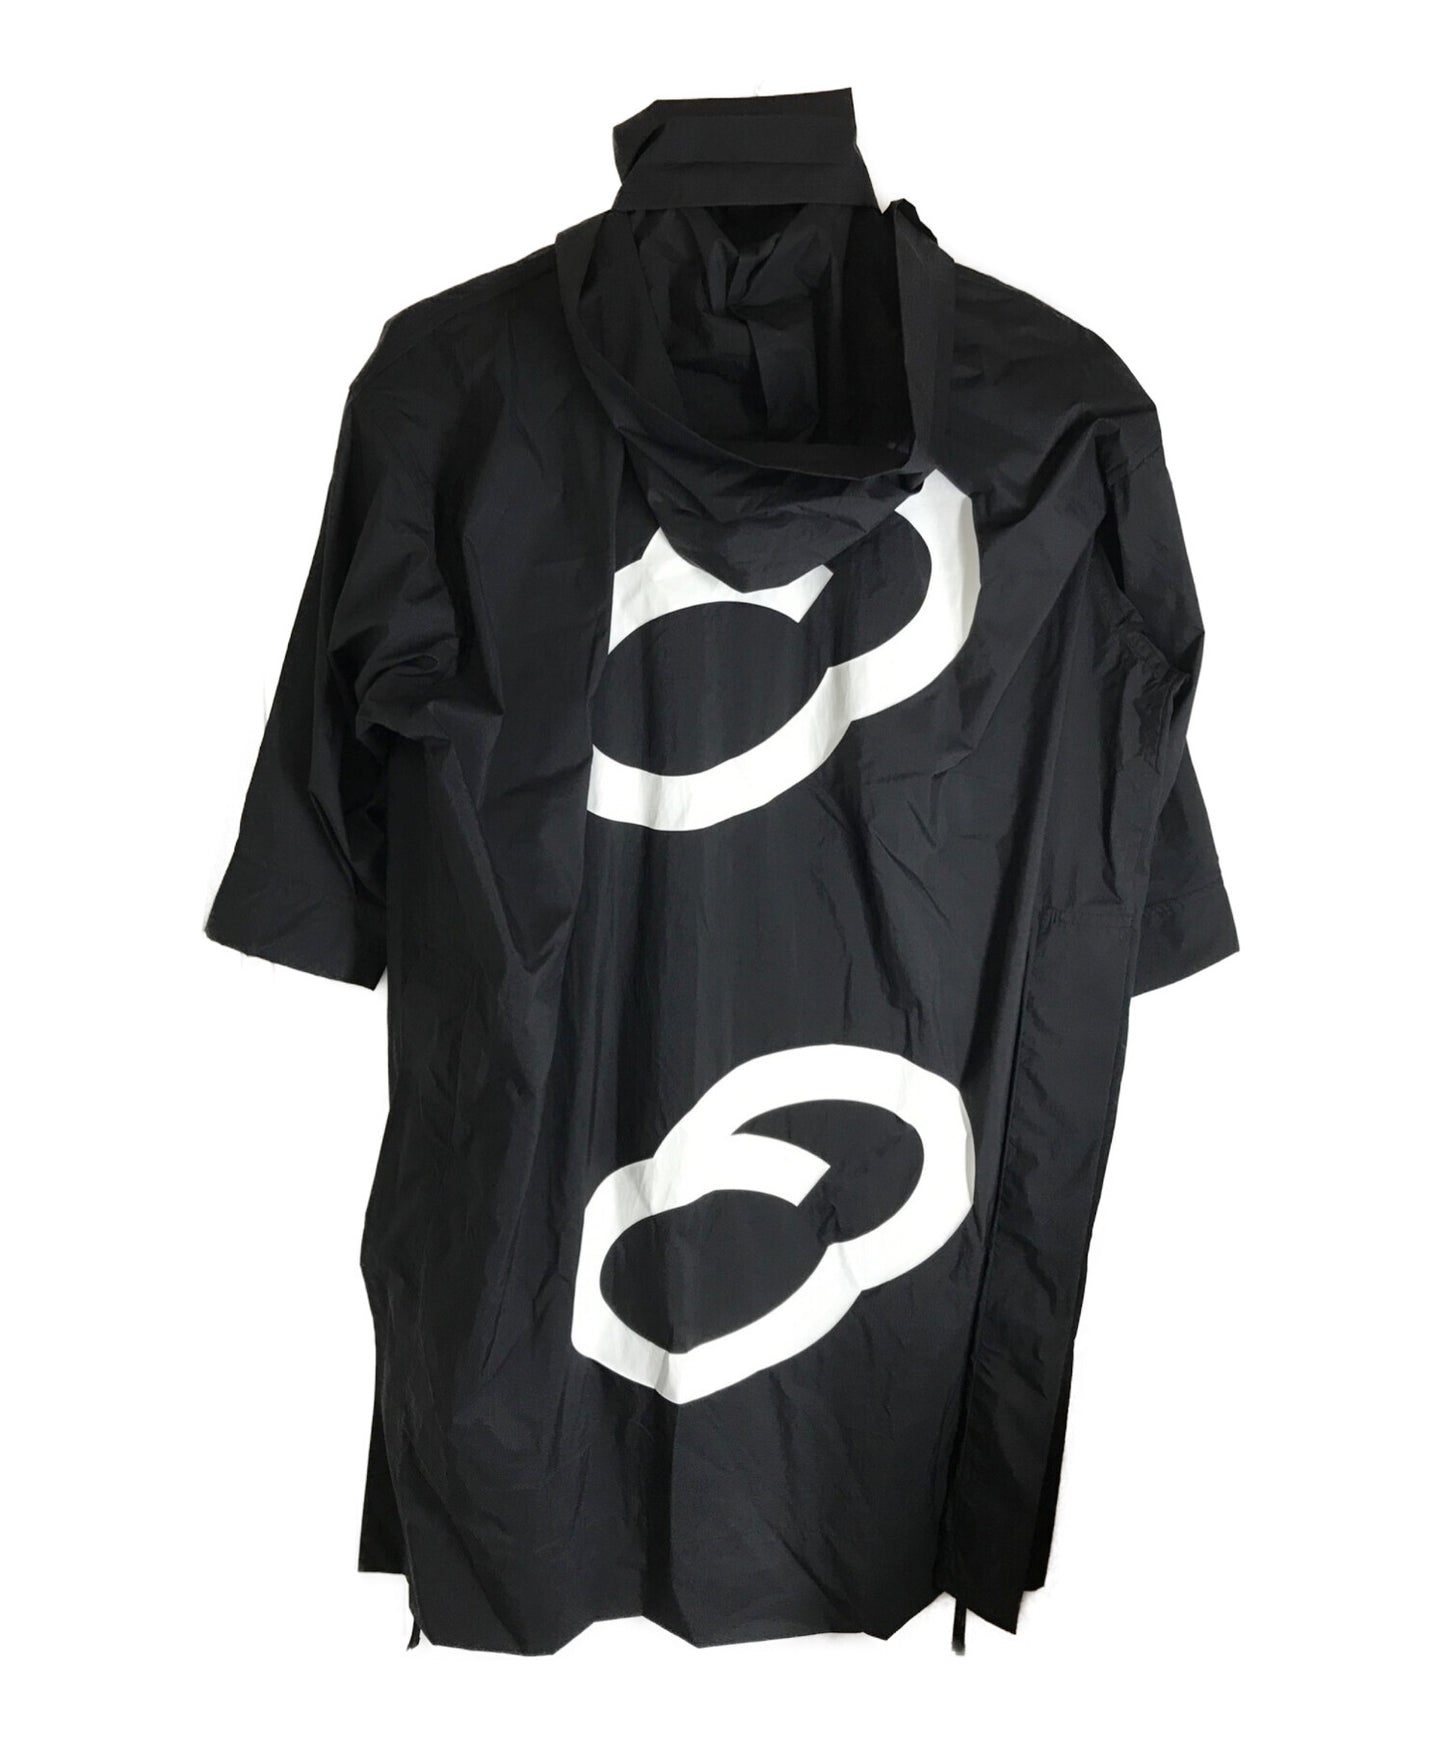 Ikko Tanaka × Issey Miyake Collaboration Stand Collar Overcoat pp91-za821